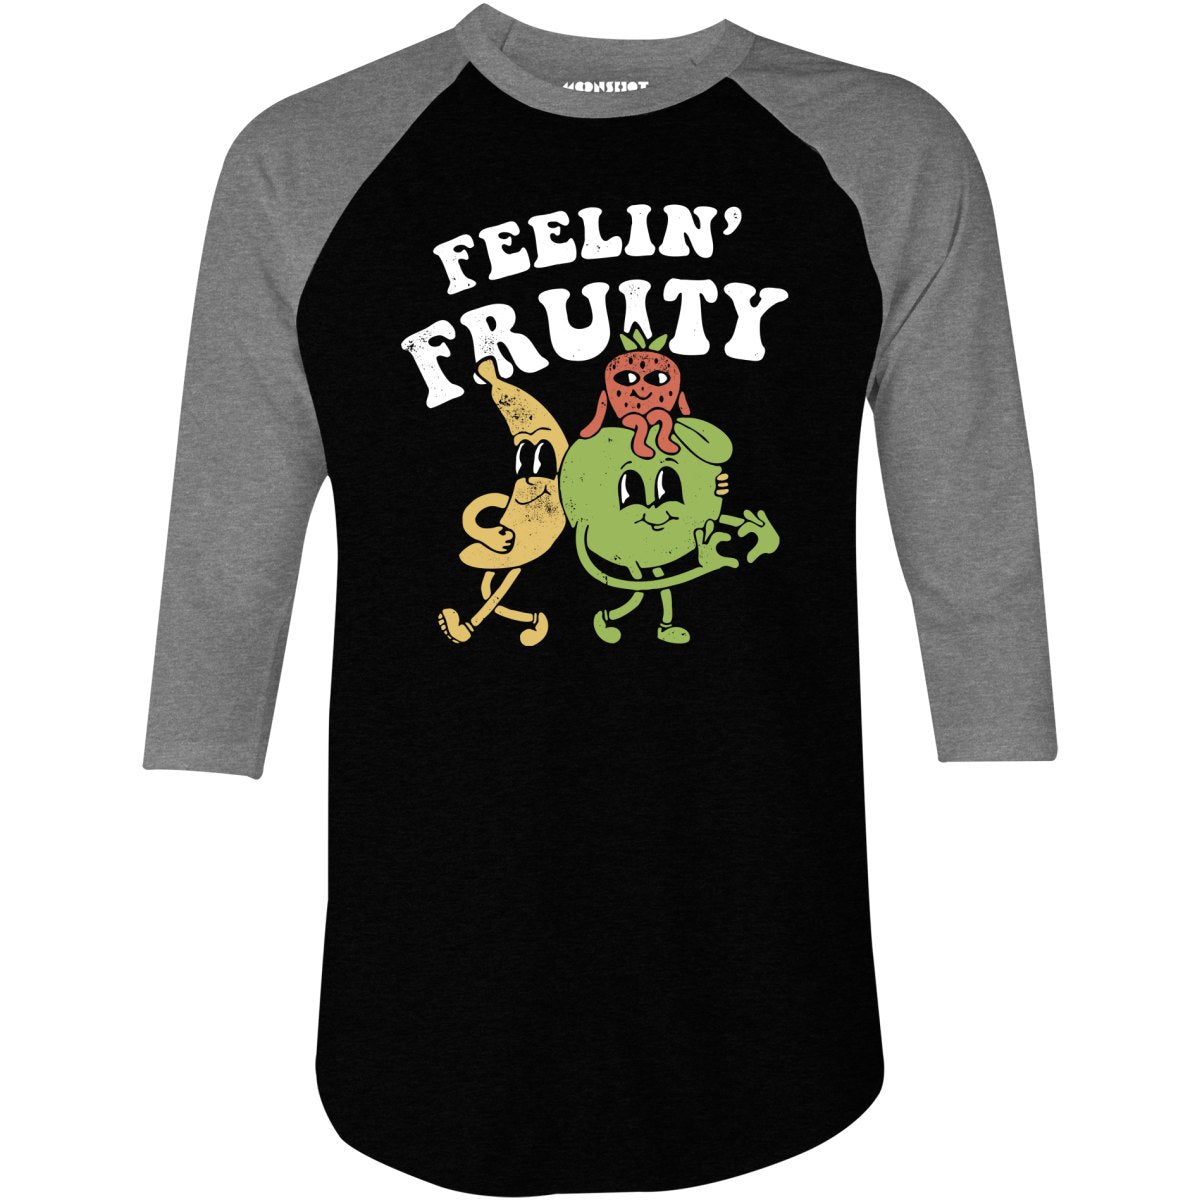 Feelin' Fruity - 3/4 Sleeve Raglan T-Shirt